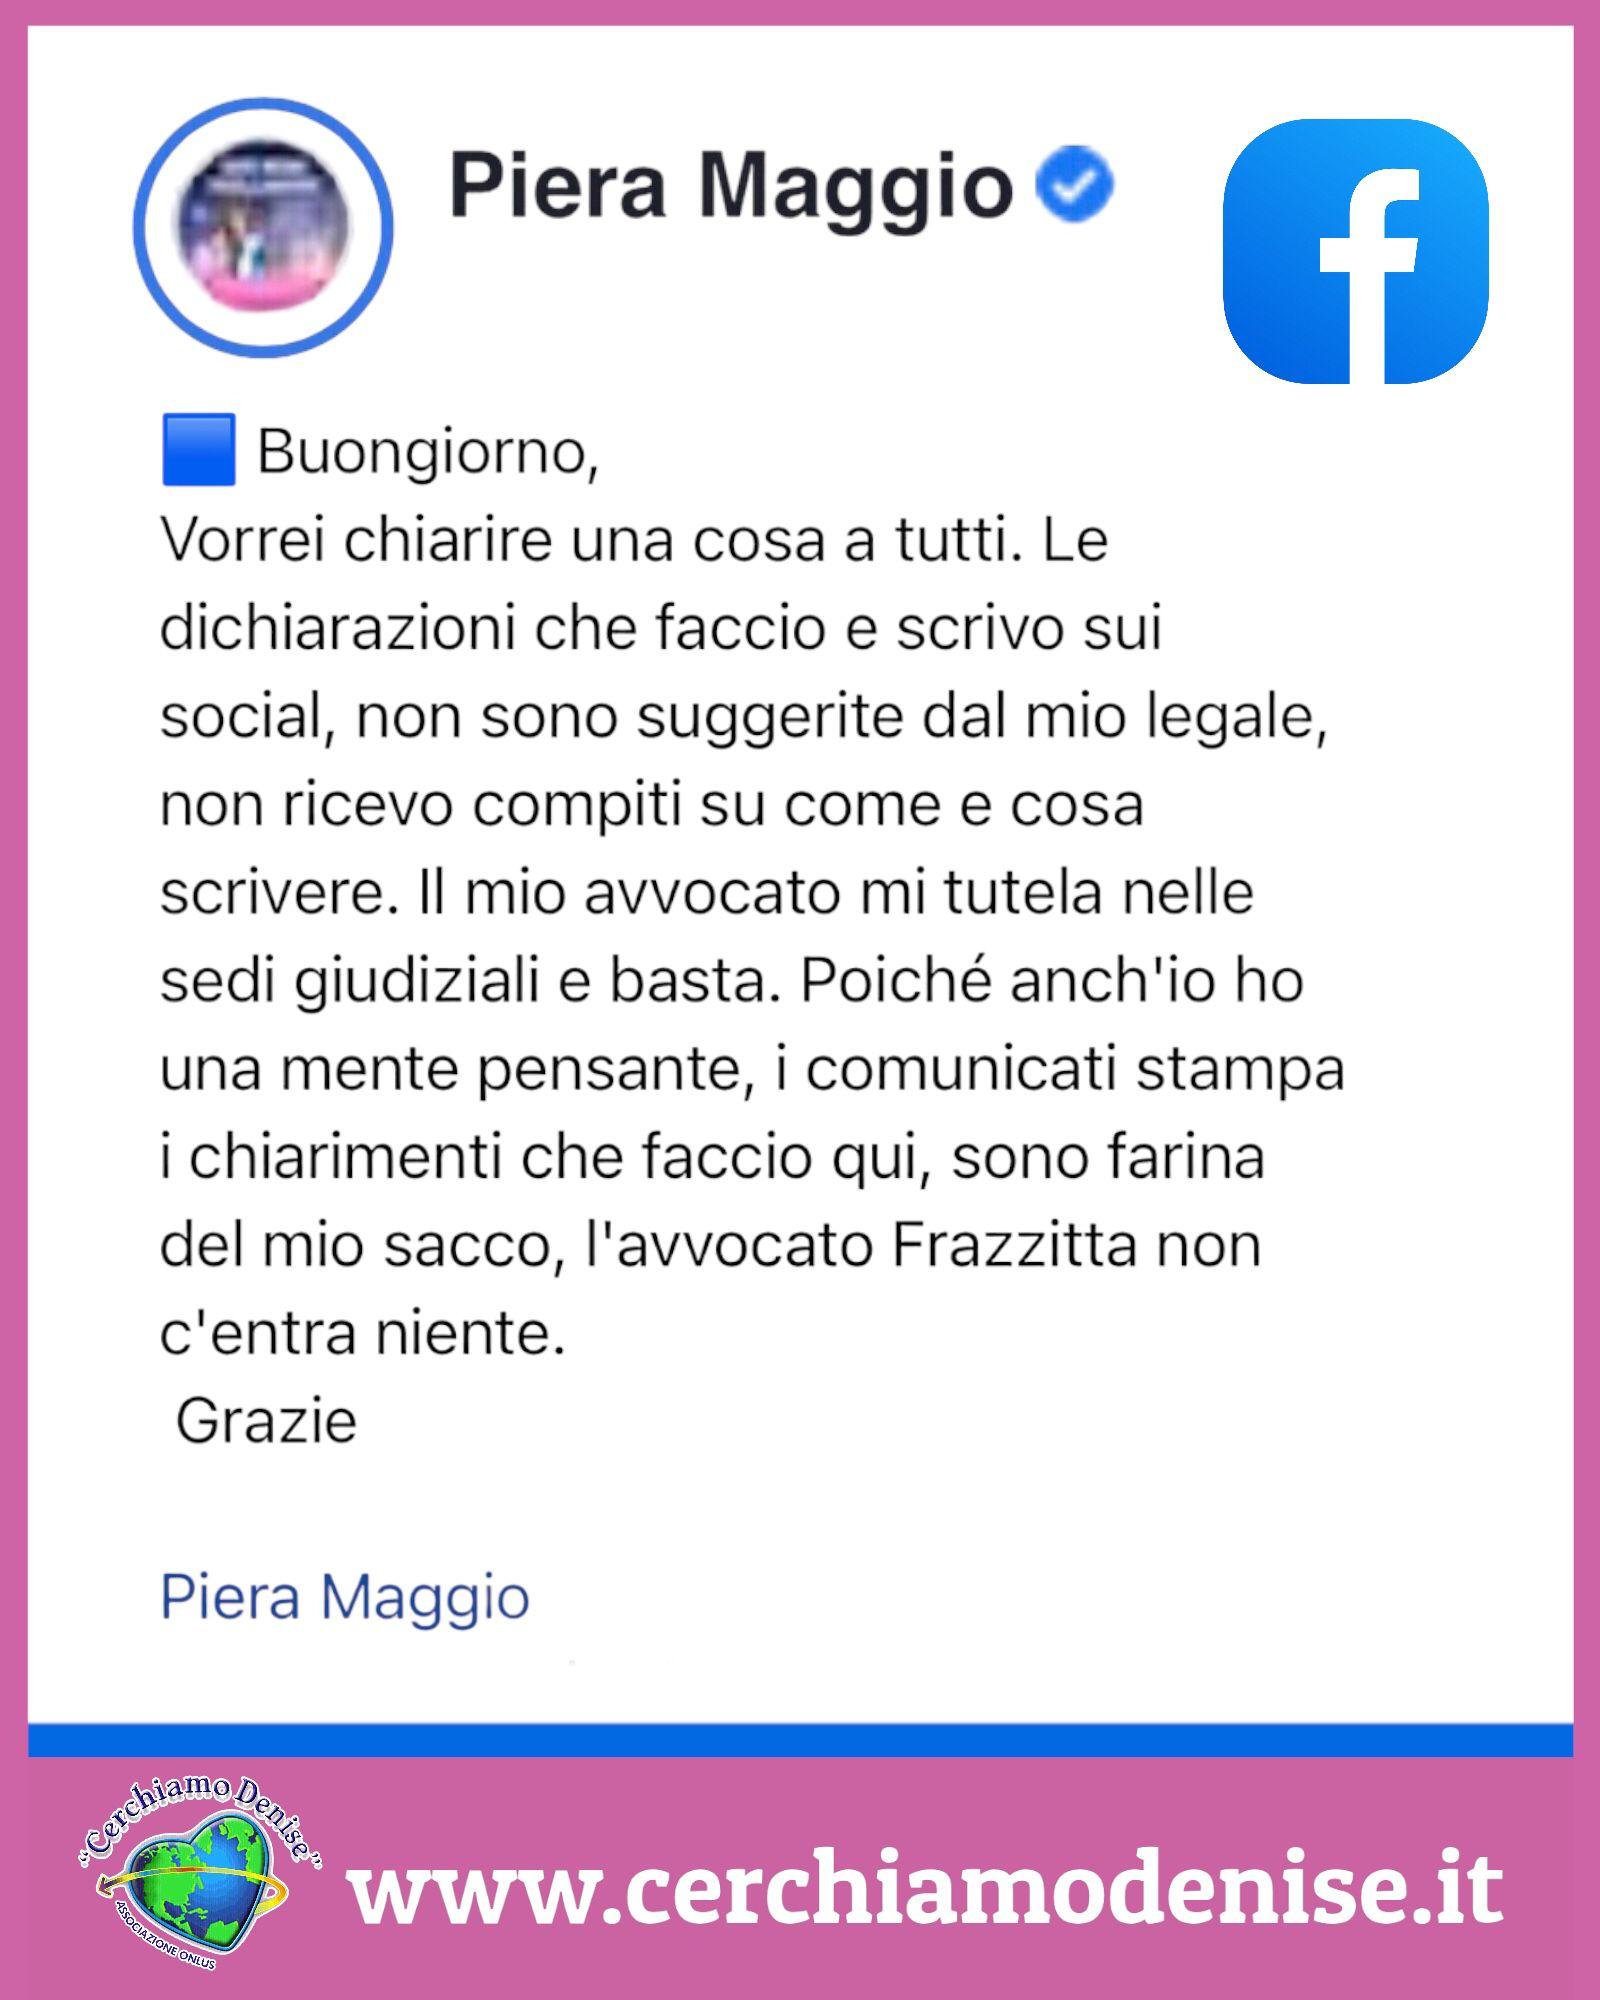 Piera Maggio: "I chiarimenti che faccio sui social, sono farina del mio sacco"